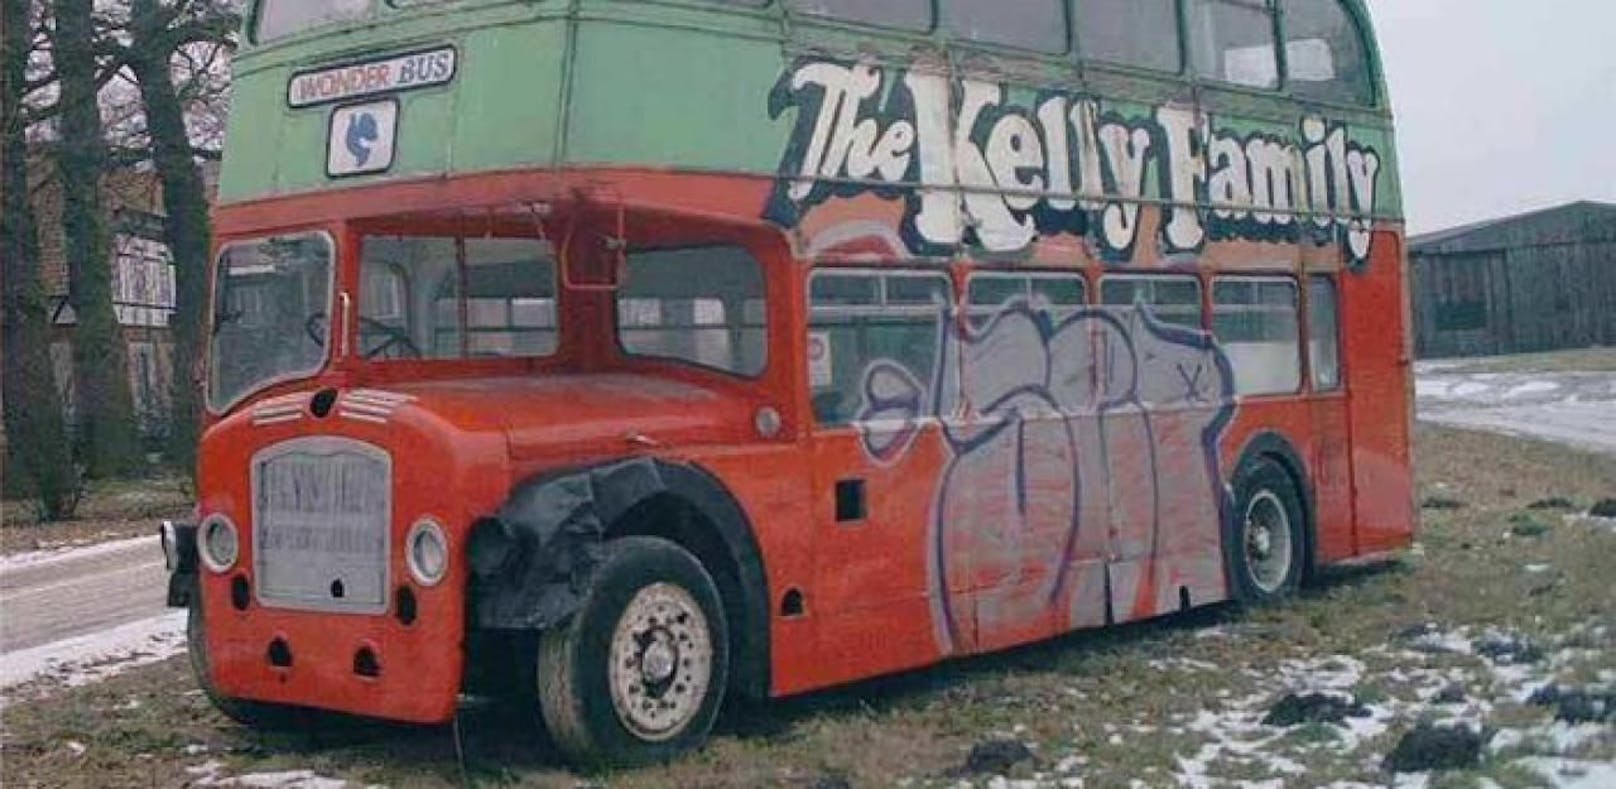 Kelly Family versteigert legendären Tourbus